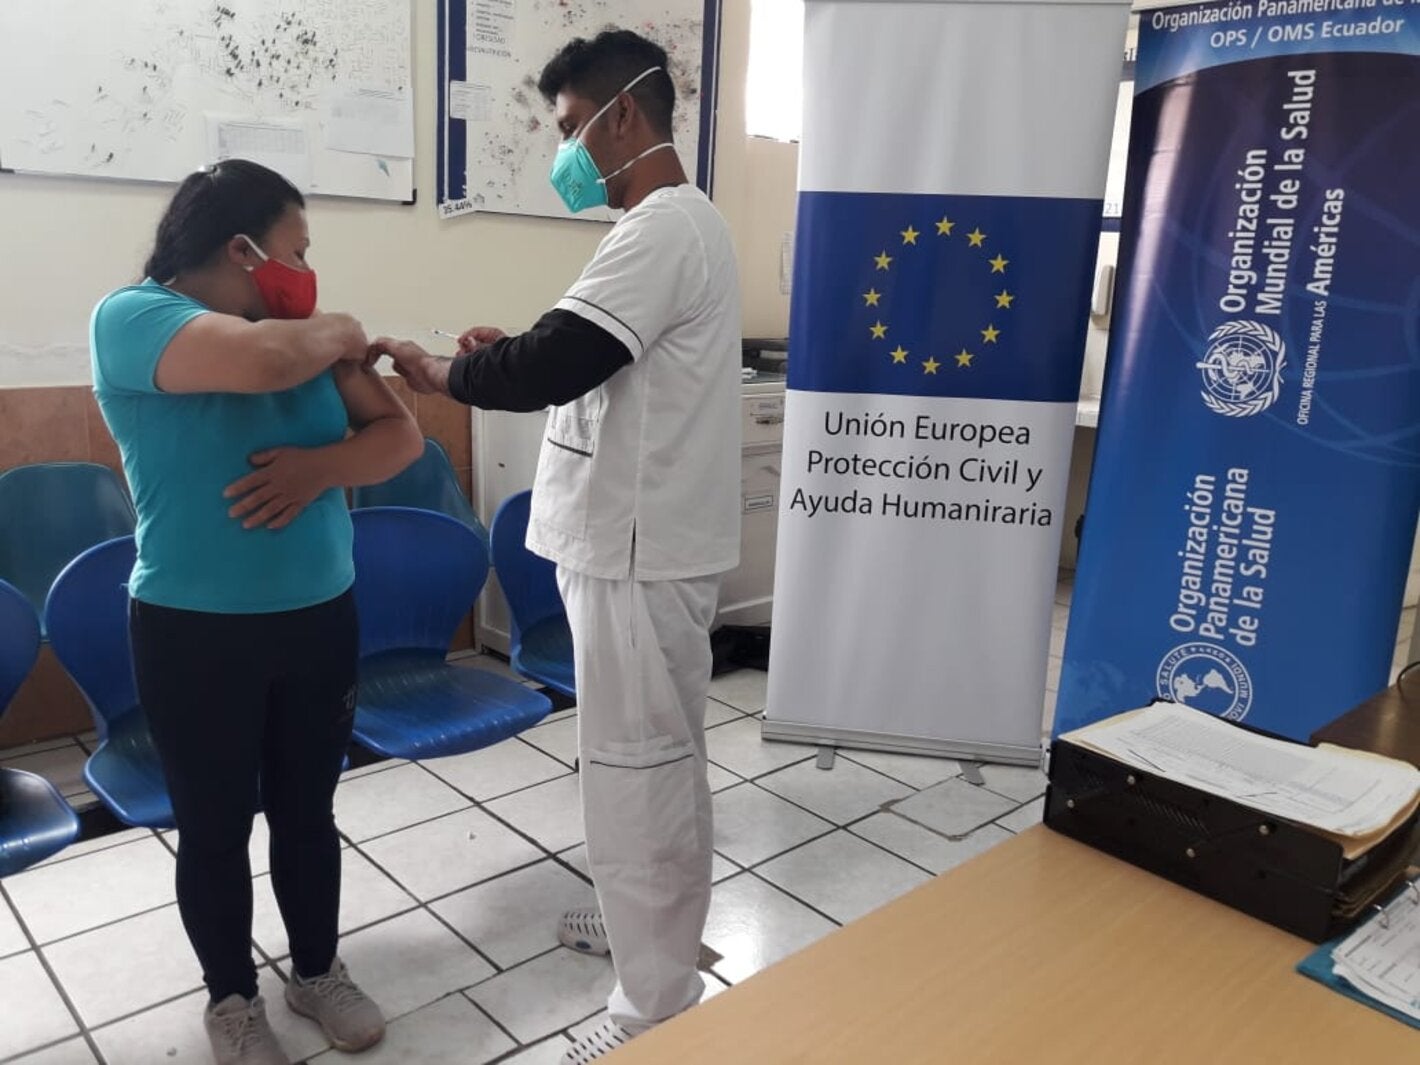 Se aplica vacunas a menores en Tulcán, con insumos donados por la OPS